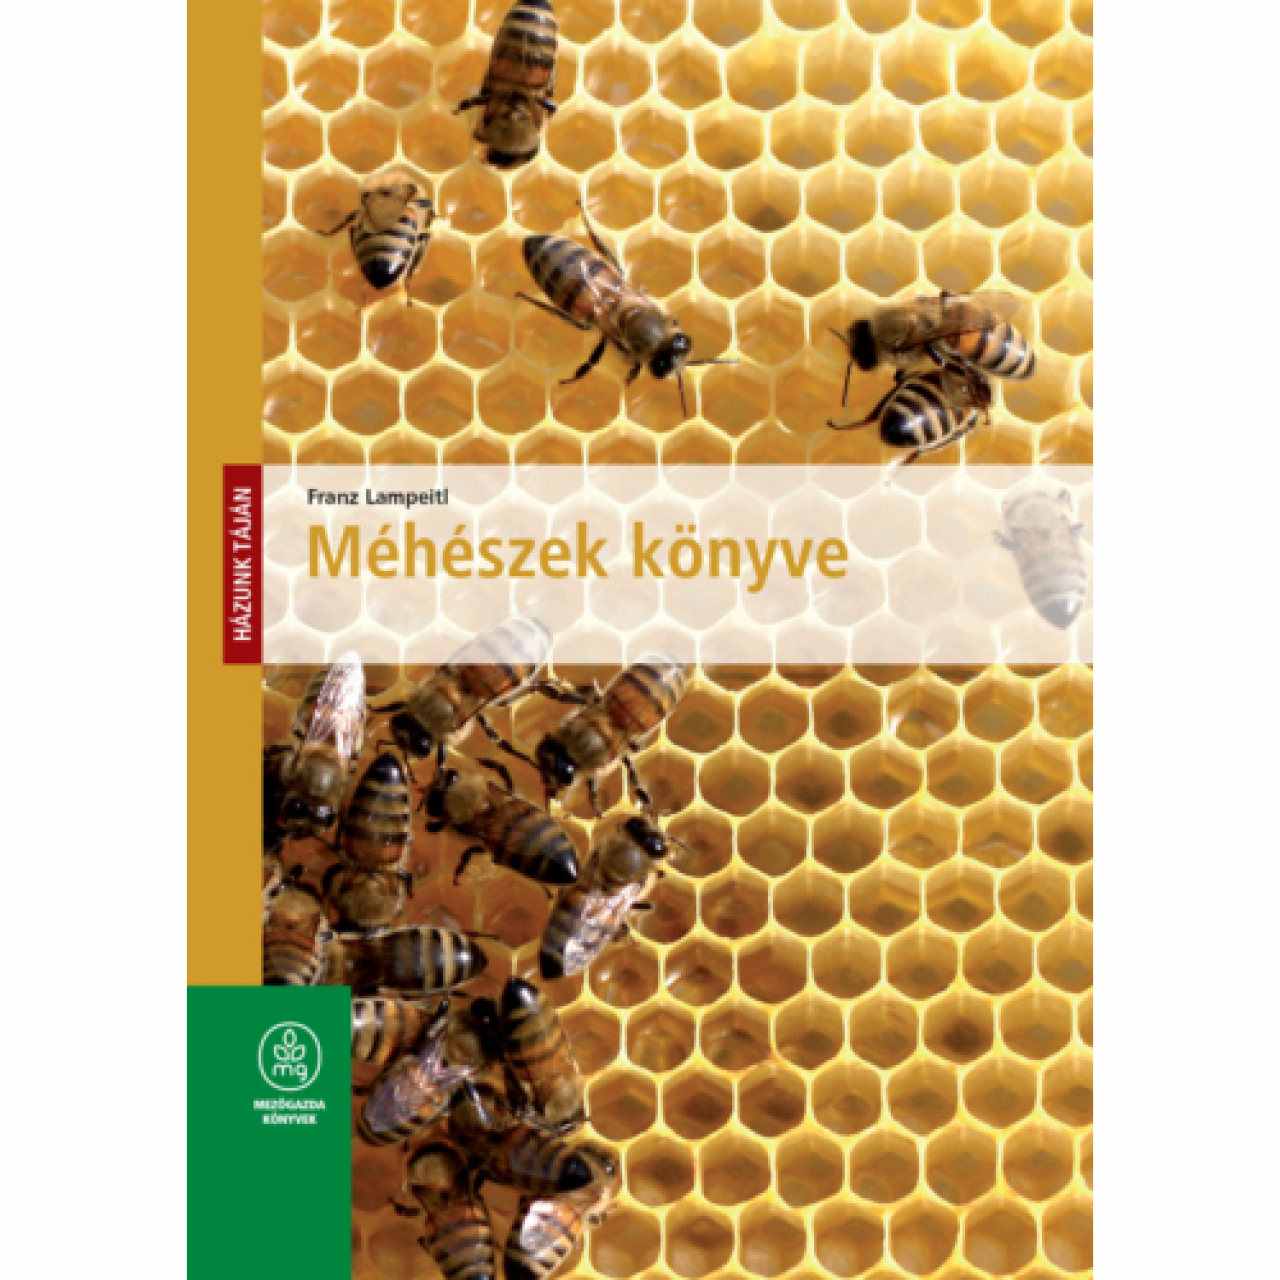 Franz Lapmeitl: Méhészek könyve